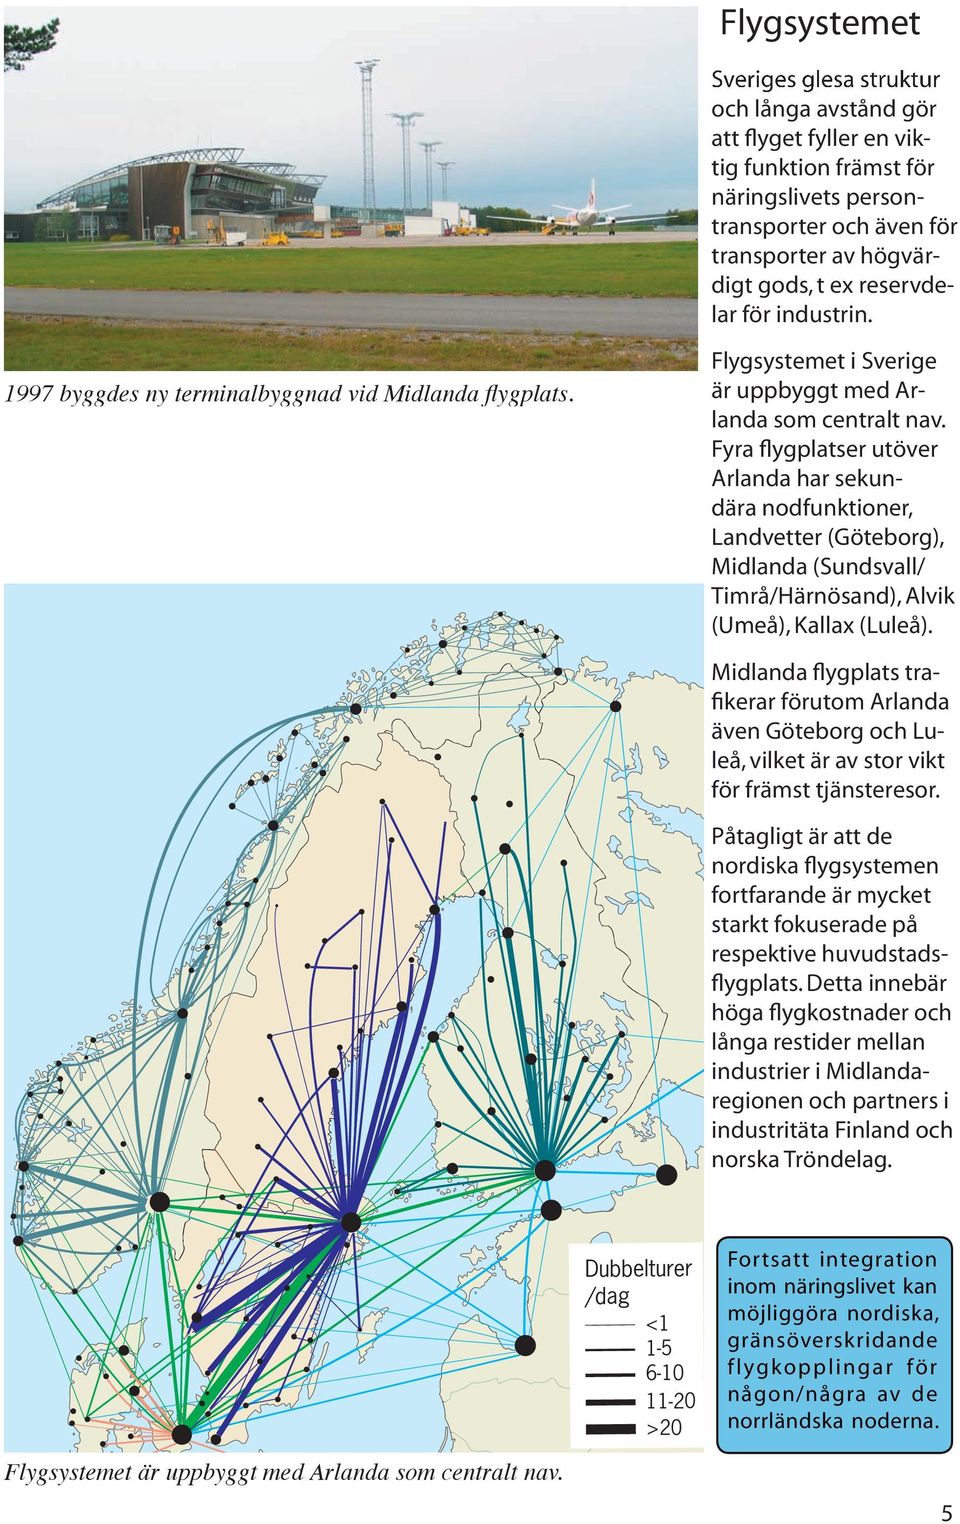 Fyra flygplatser utöver Arlanda har sekundära nodfunktioner, Landvetter (Göteborg), Midlanda (/ Timrå/Härnösand), Alvik (Umeå), Kallax (Luleå).